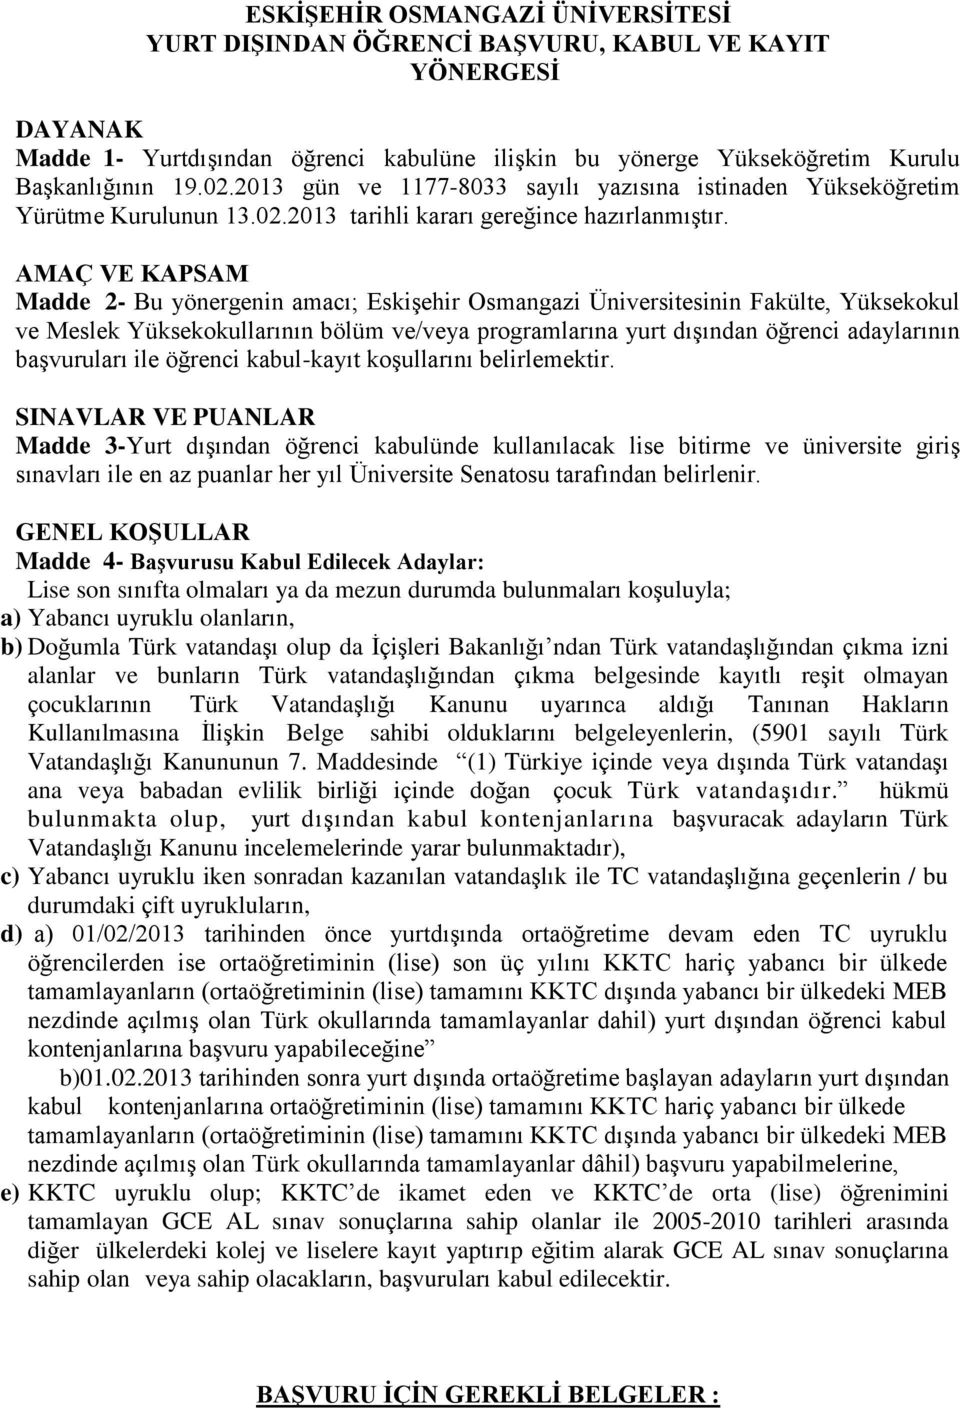 AMAÇ VE KAPSAM Madde 2- Bu yönergenin amacı; Eskişehir Osmangazi Üniversitesinin Fakülte, Yüksekokul ve Meslek Yüksekokullarının bölüm ve/veya programlarına yurt dışından öğrenci adaylarının